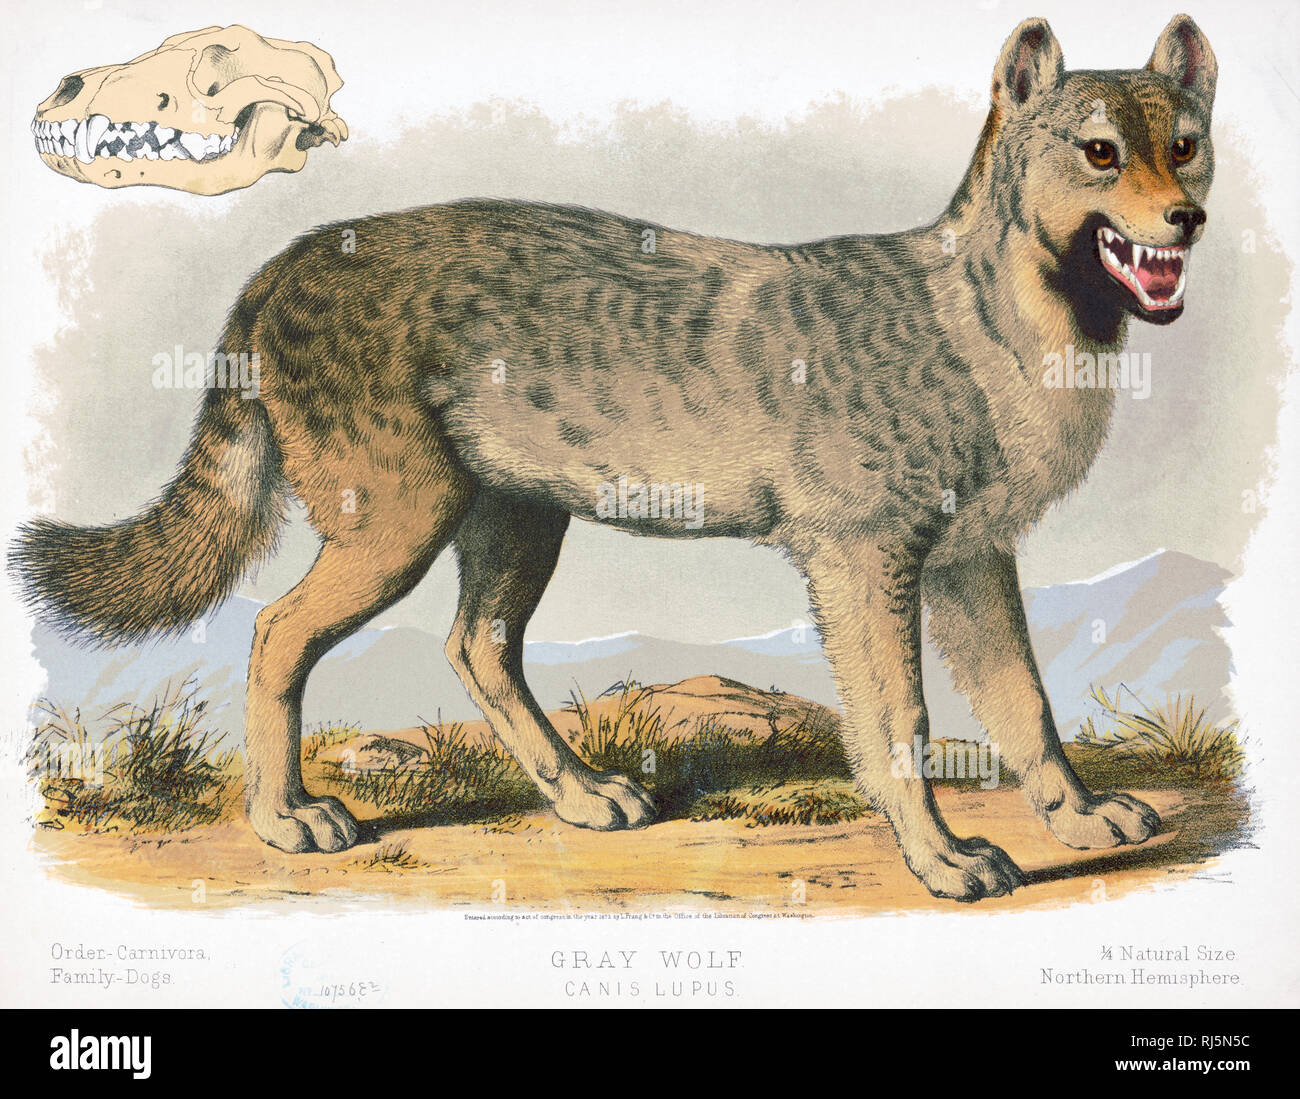 Drucken zeigt eine Ansicht von der rechten Seite des "grauen Wolf", volle Länge, stehend, mit dem Kopf leicht nach rechts gedreht, zeigt auch ein Schädel Stockfoto